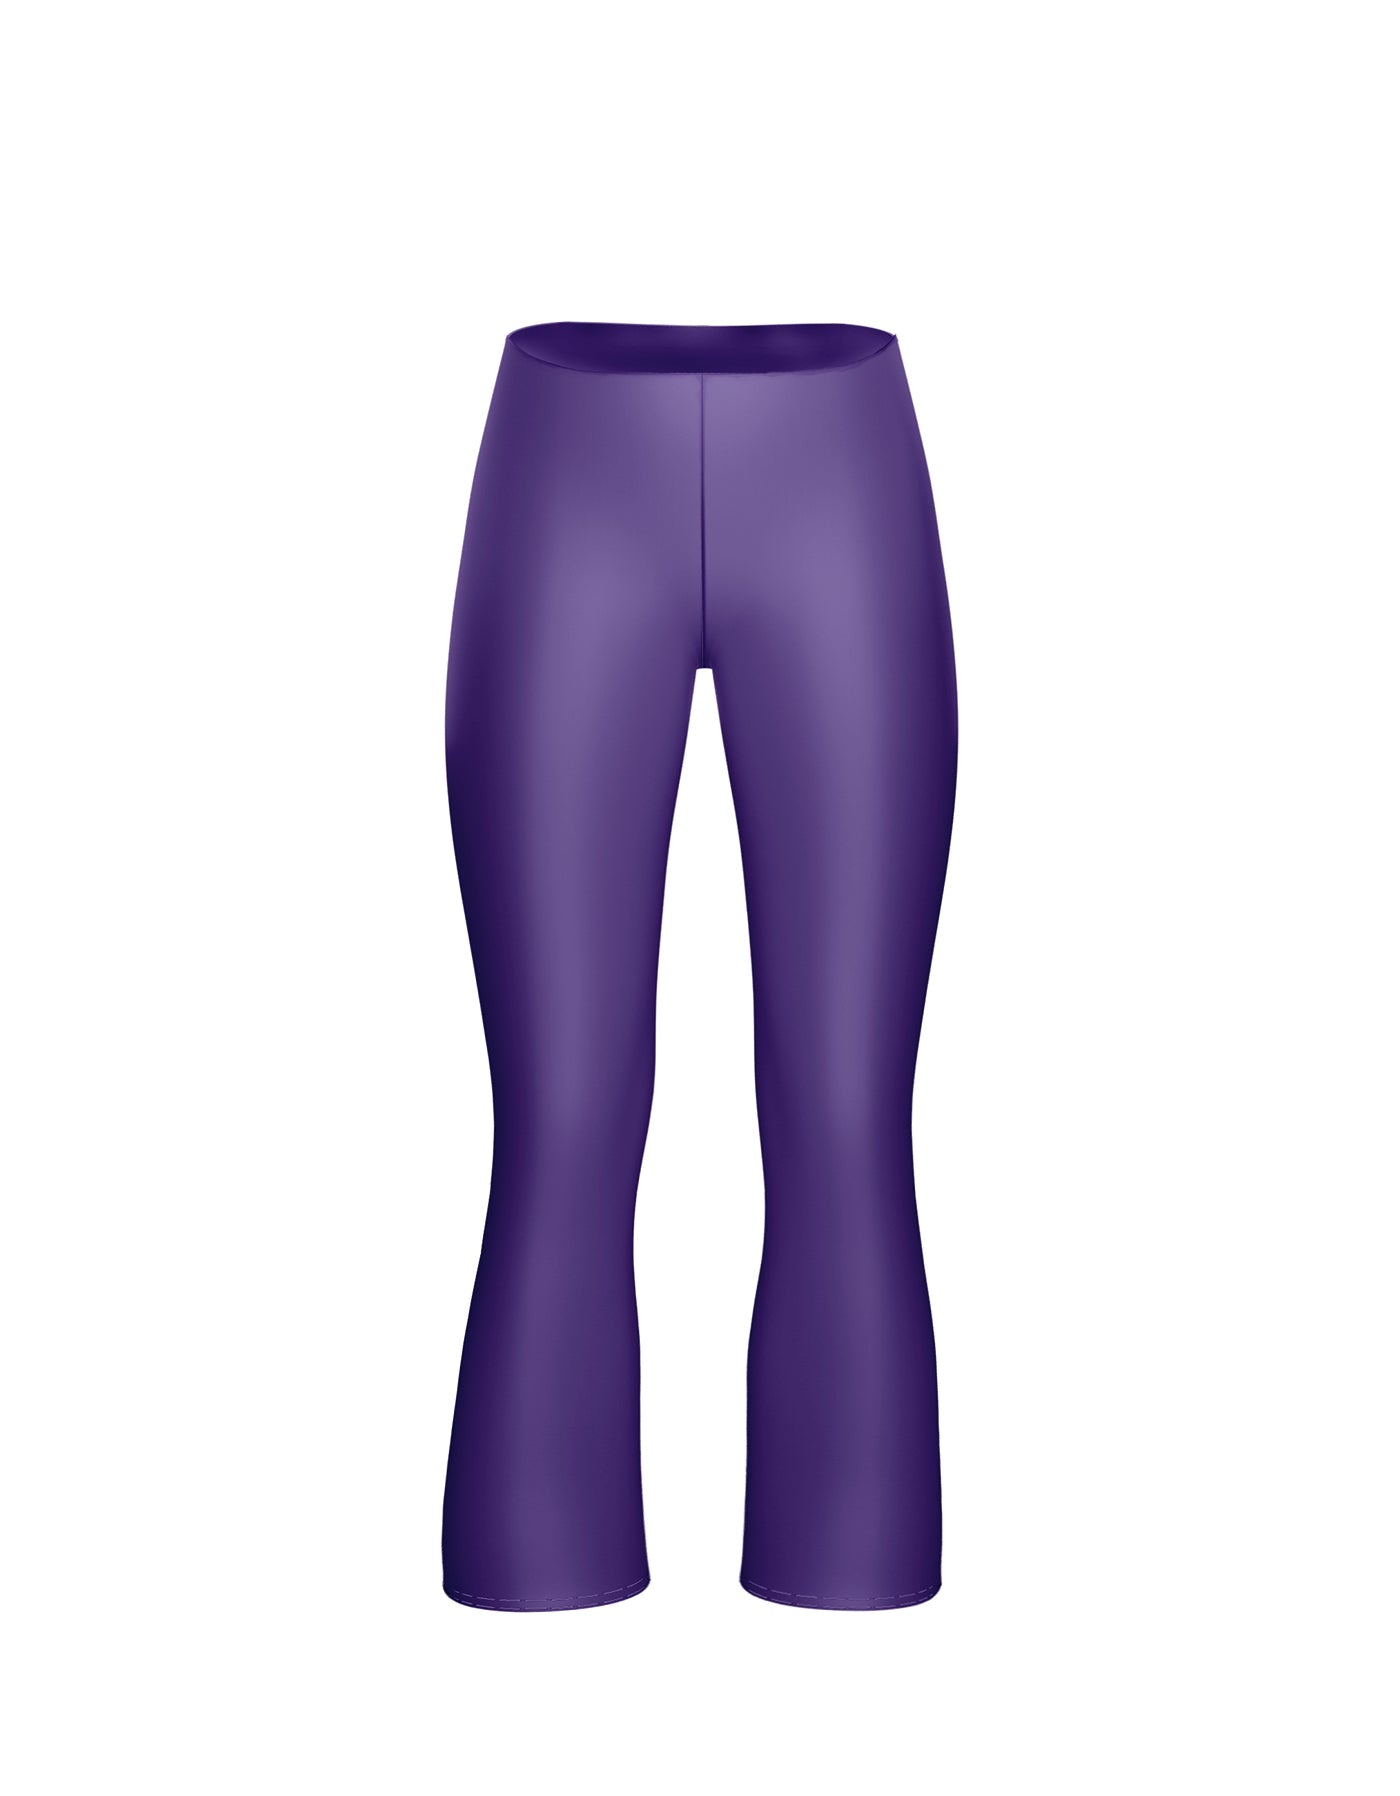 purpletutu